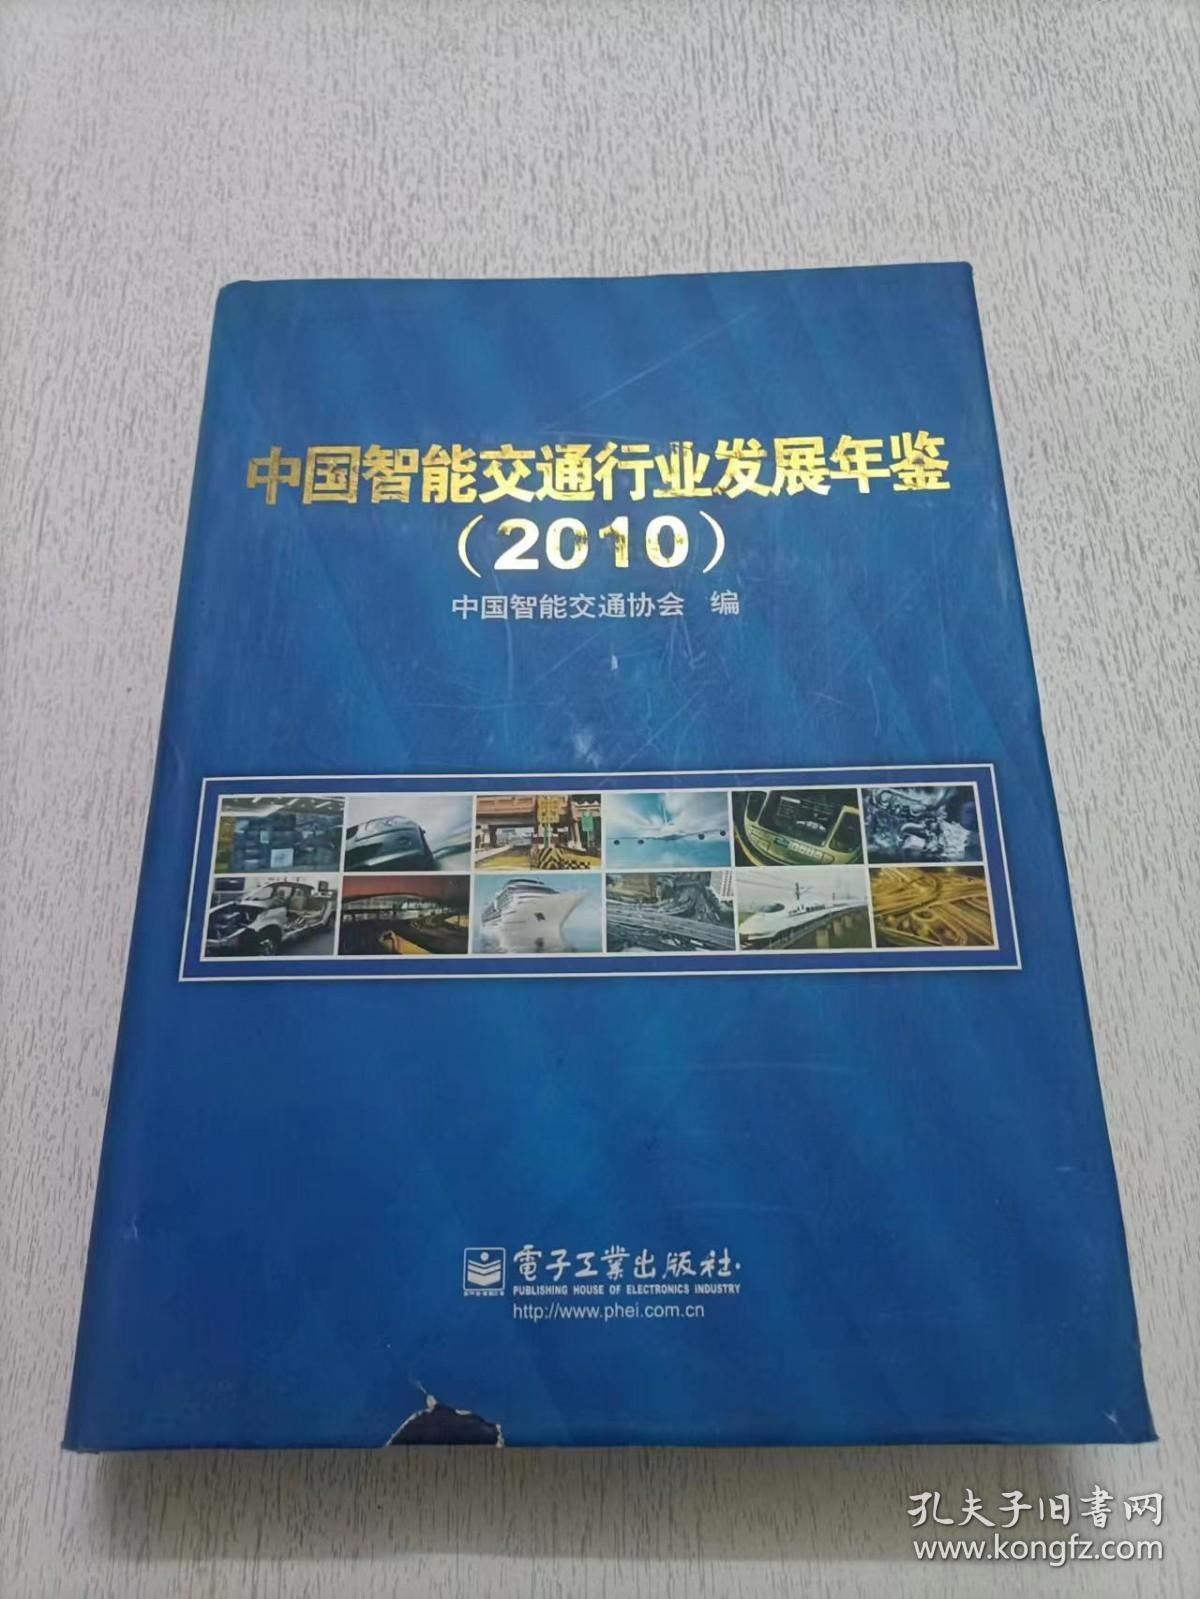 中国智能交通行业发展年鉴 2010